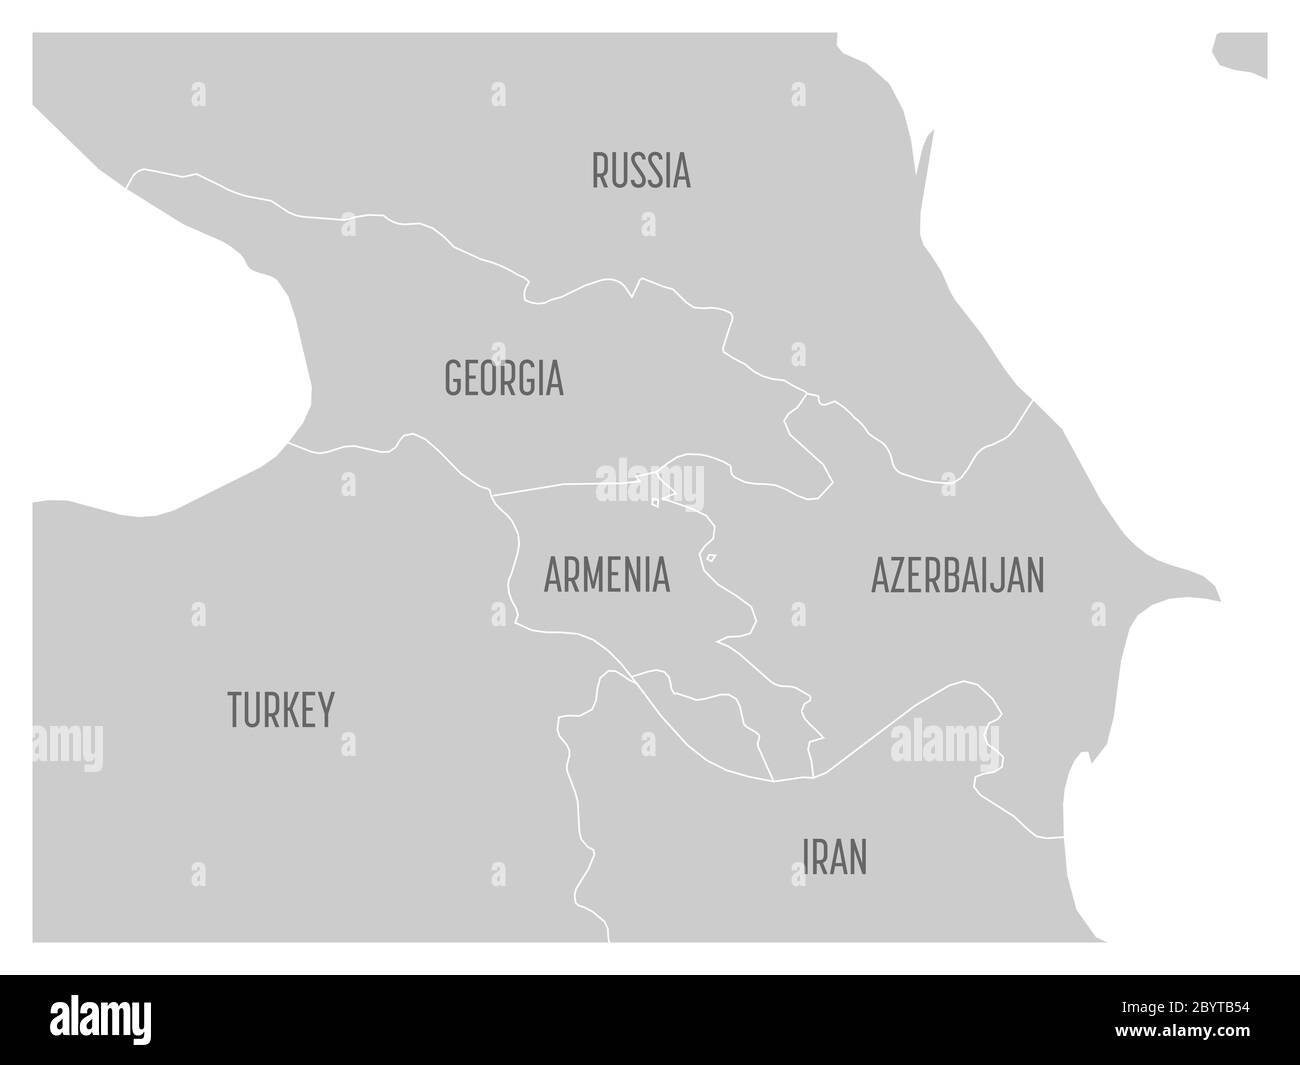 Mappa della regione caucasica con gli stati di Georgia, Armenia, Azerbaigian, Russia Turchia e Iran. Mappa grigia piatta con confini bianchi. Illustrazione Vettoriale